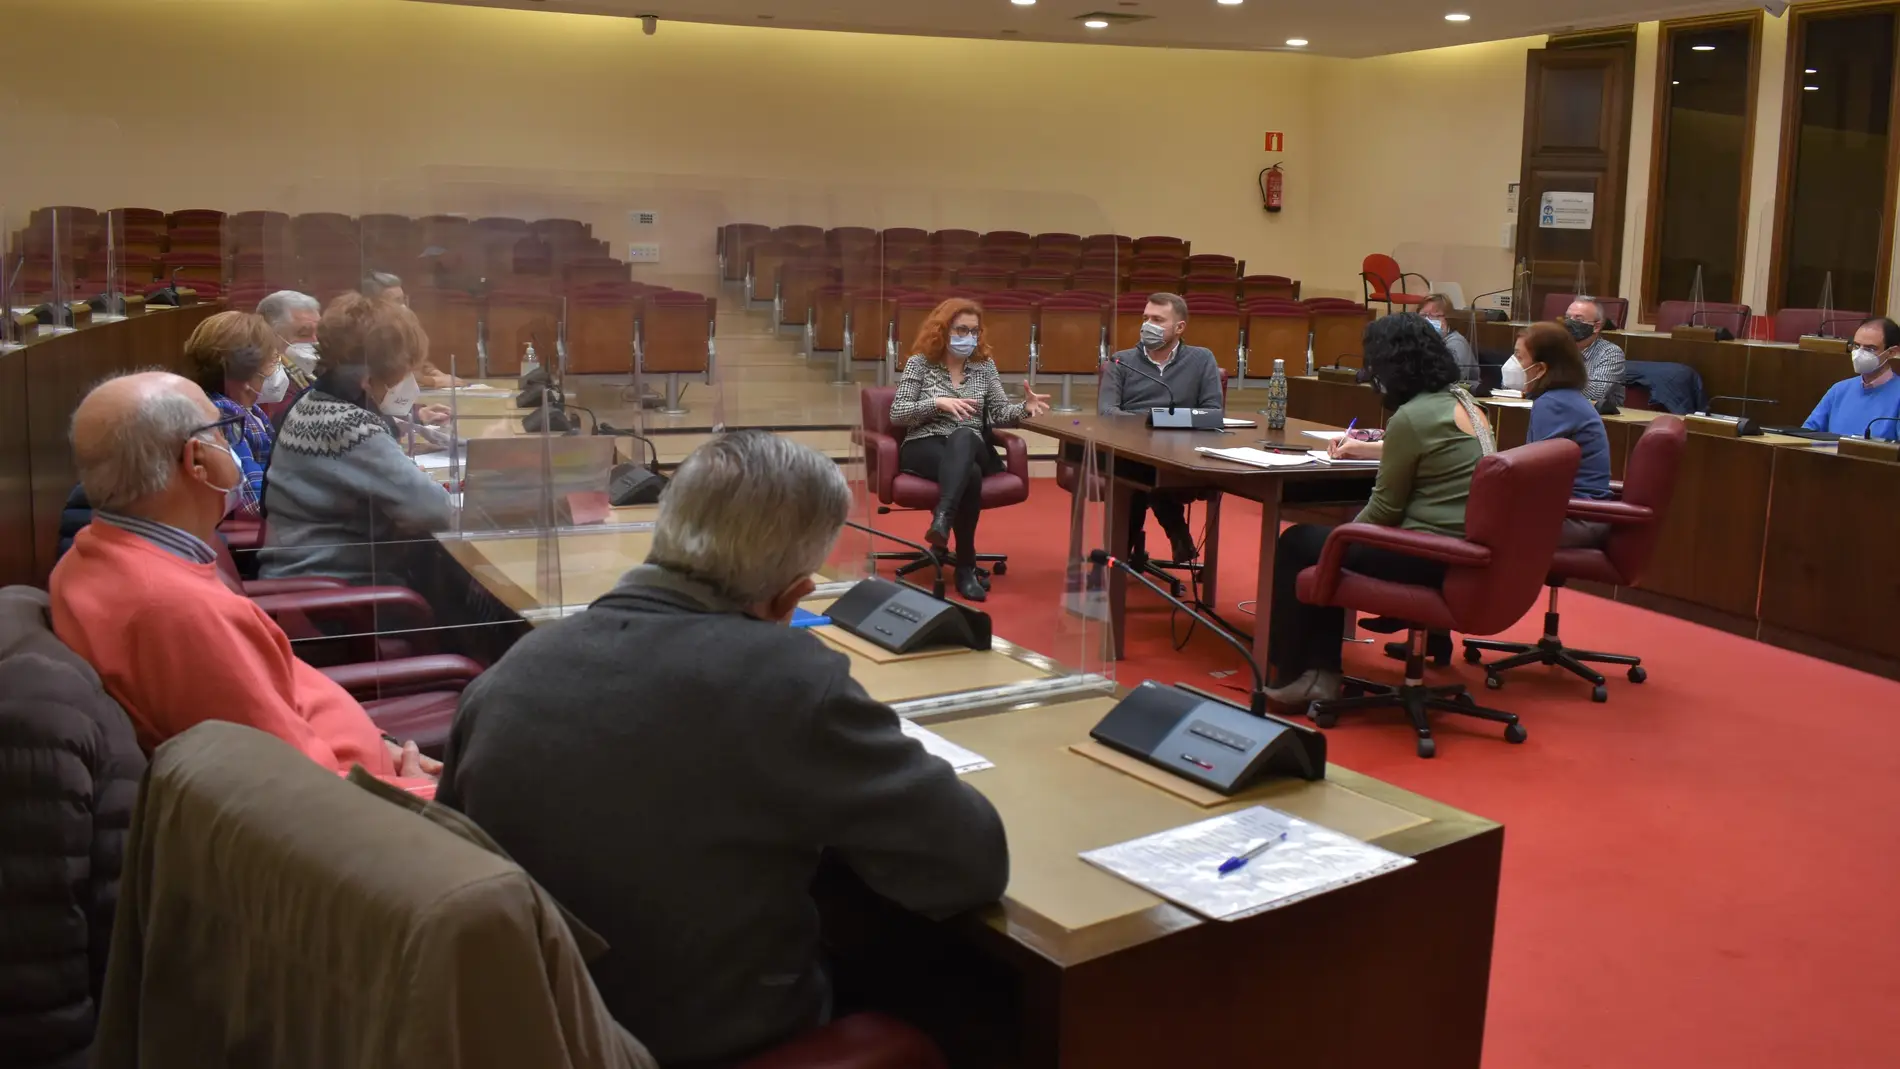 Formación digital en servicios bancarios a las personas mayores desde el Ayuntamiento de Albacete